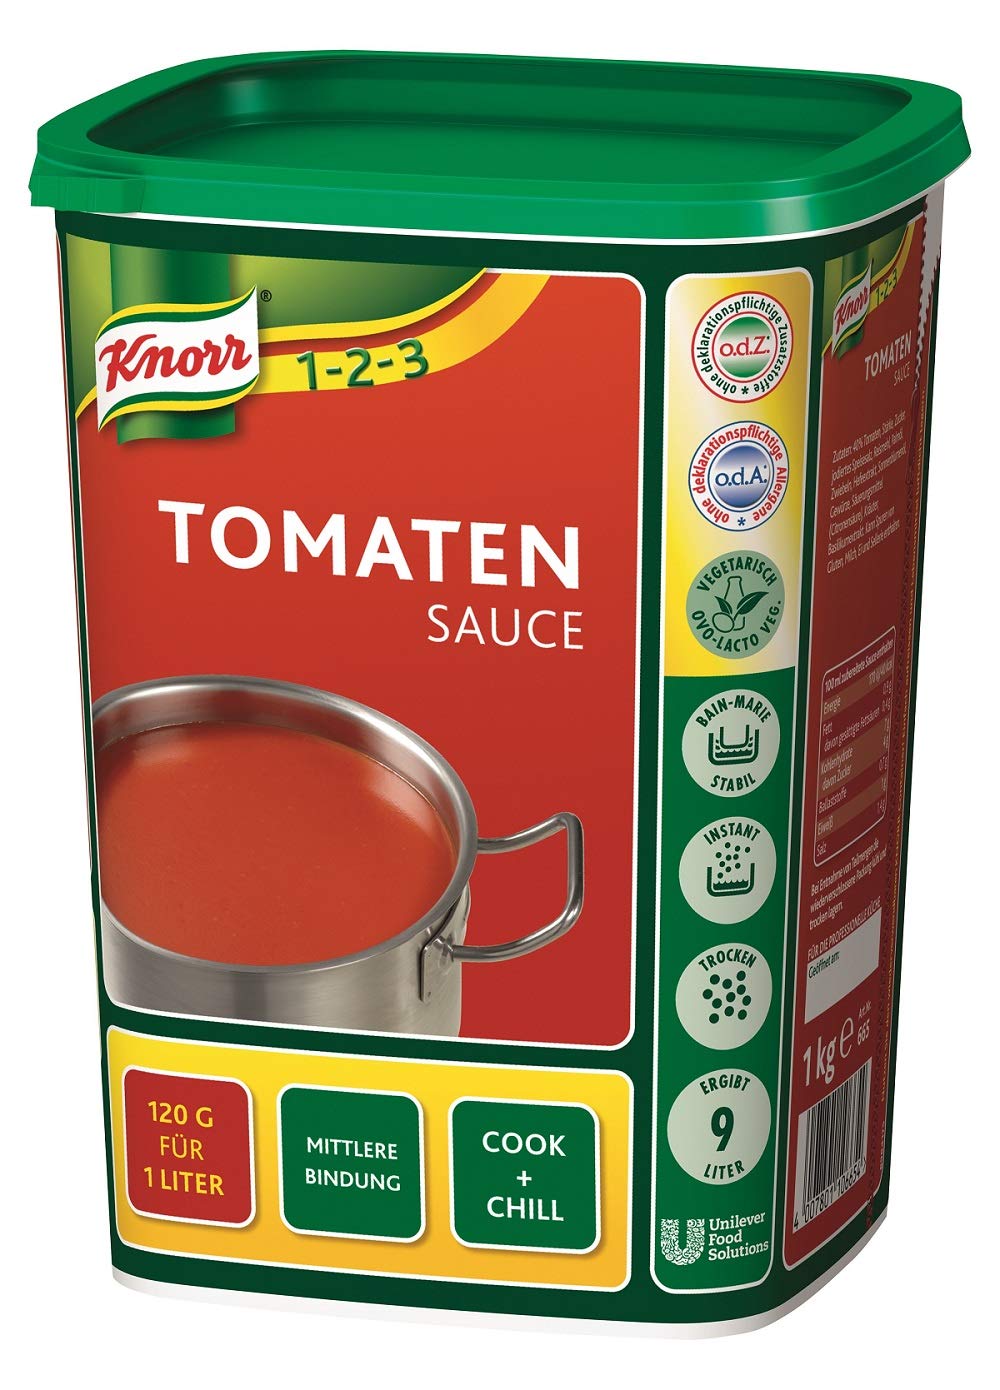 Das beste Tomatenmark: Top-Qualität für Ihre Tomatensaucen